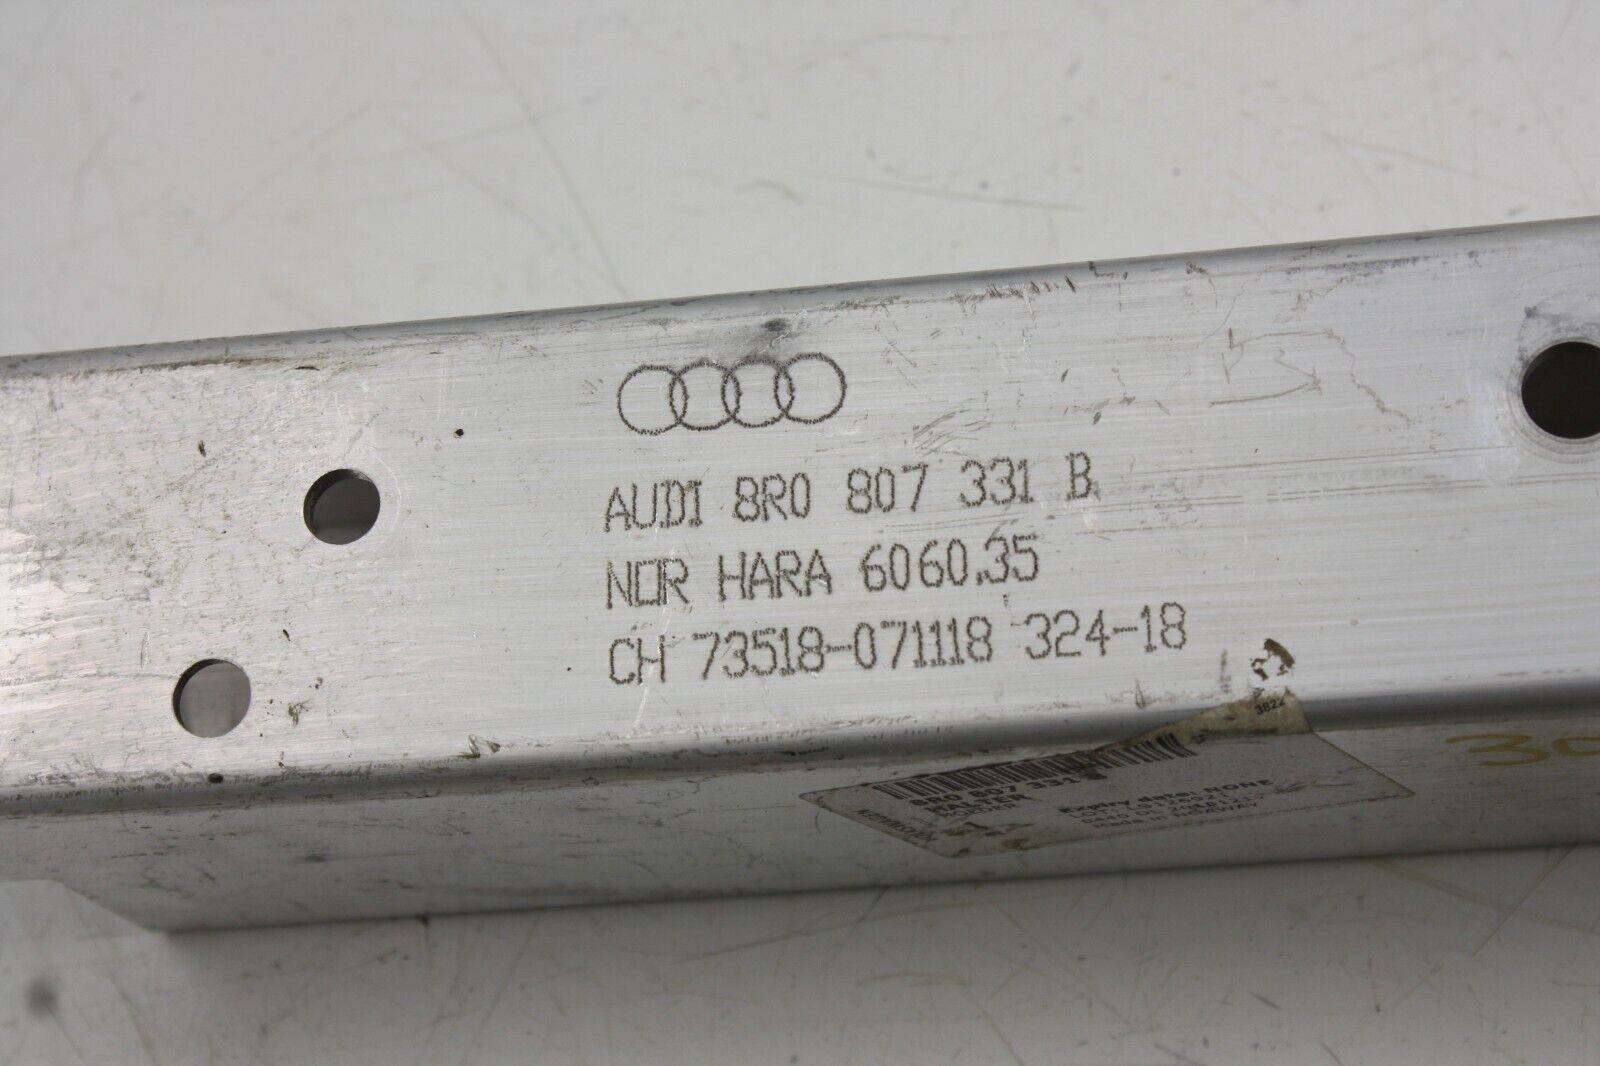 Audi-Q5-Front-Crash-Bar-Left-Side-Extension-8R0807331B-Genuine-175367531322-7